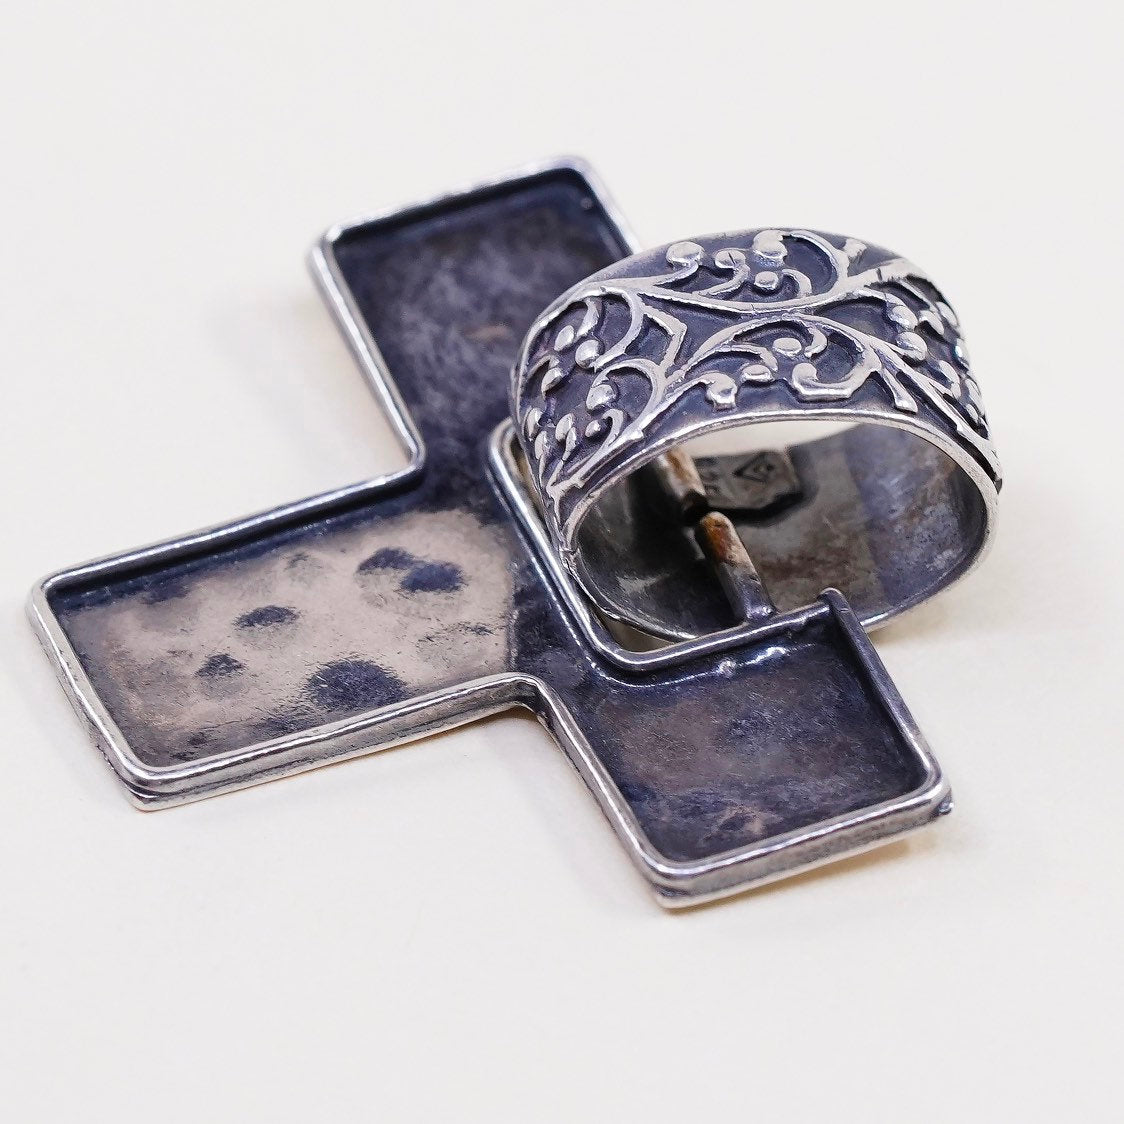 VTG Silpada sterling silver handmade charm, 925 initial "T” slide pendant